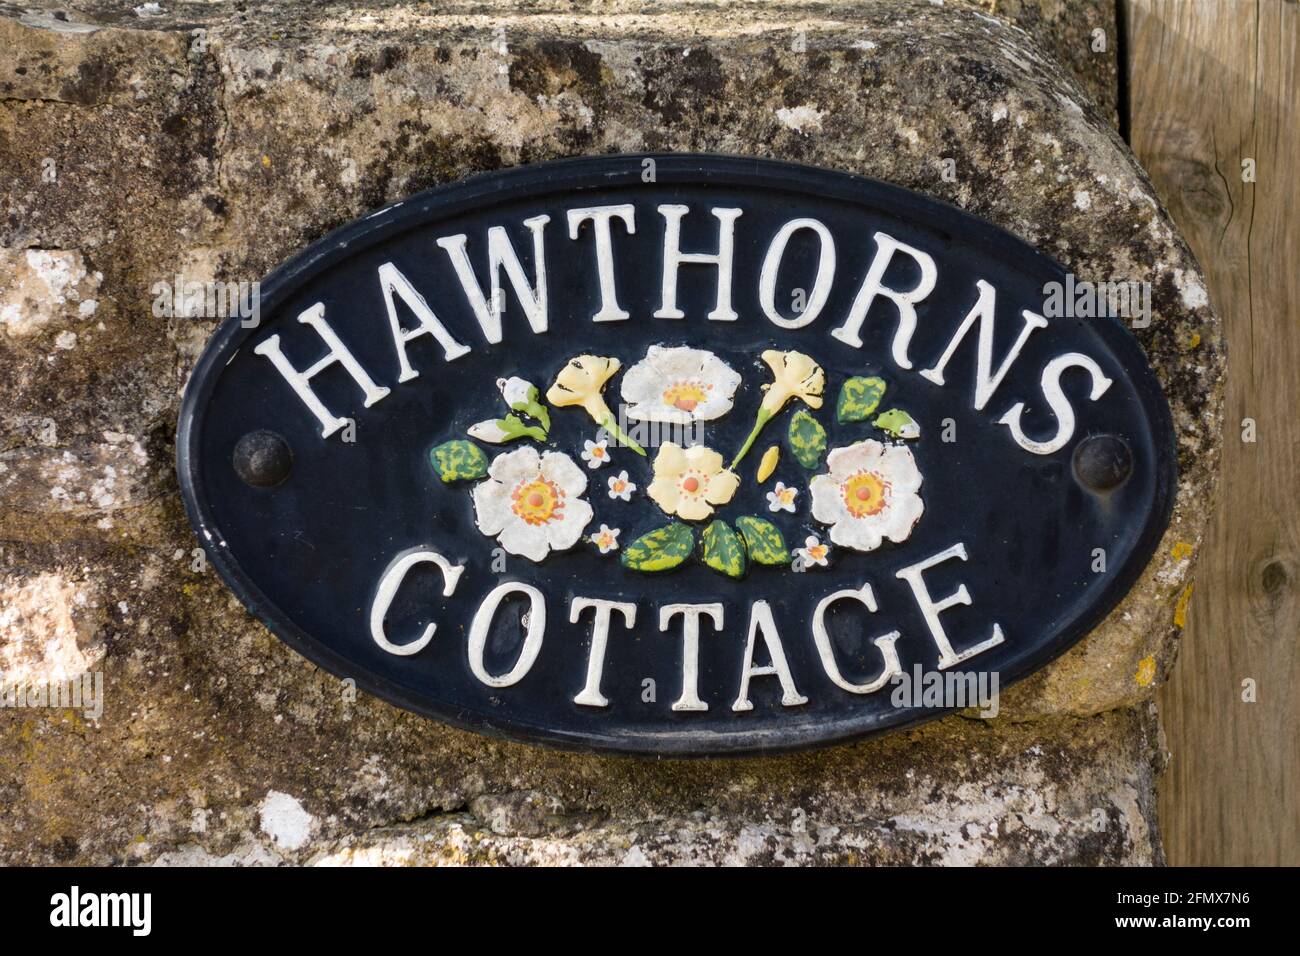 Hawthorns cottage plaque, Gloucestershire, UK Stock Photo